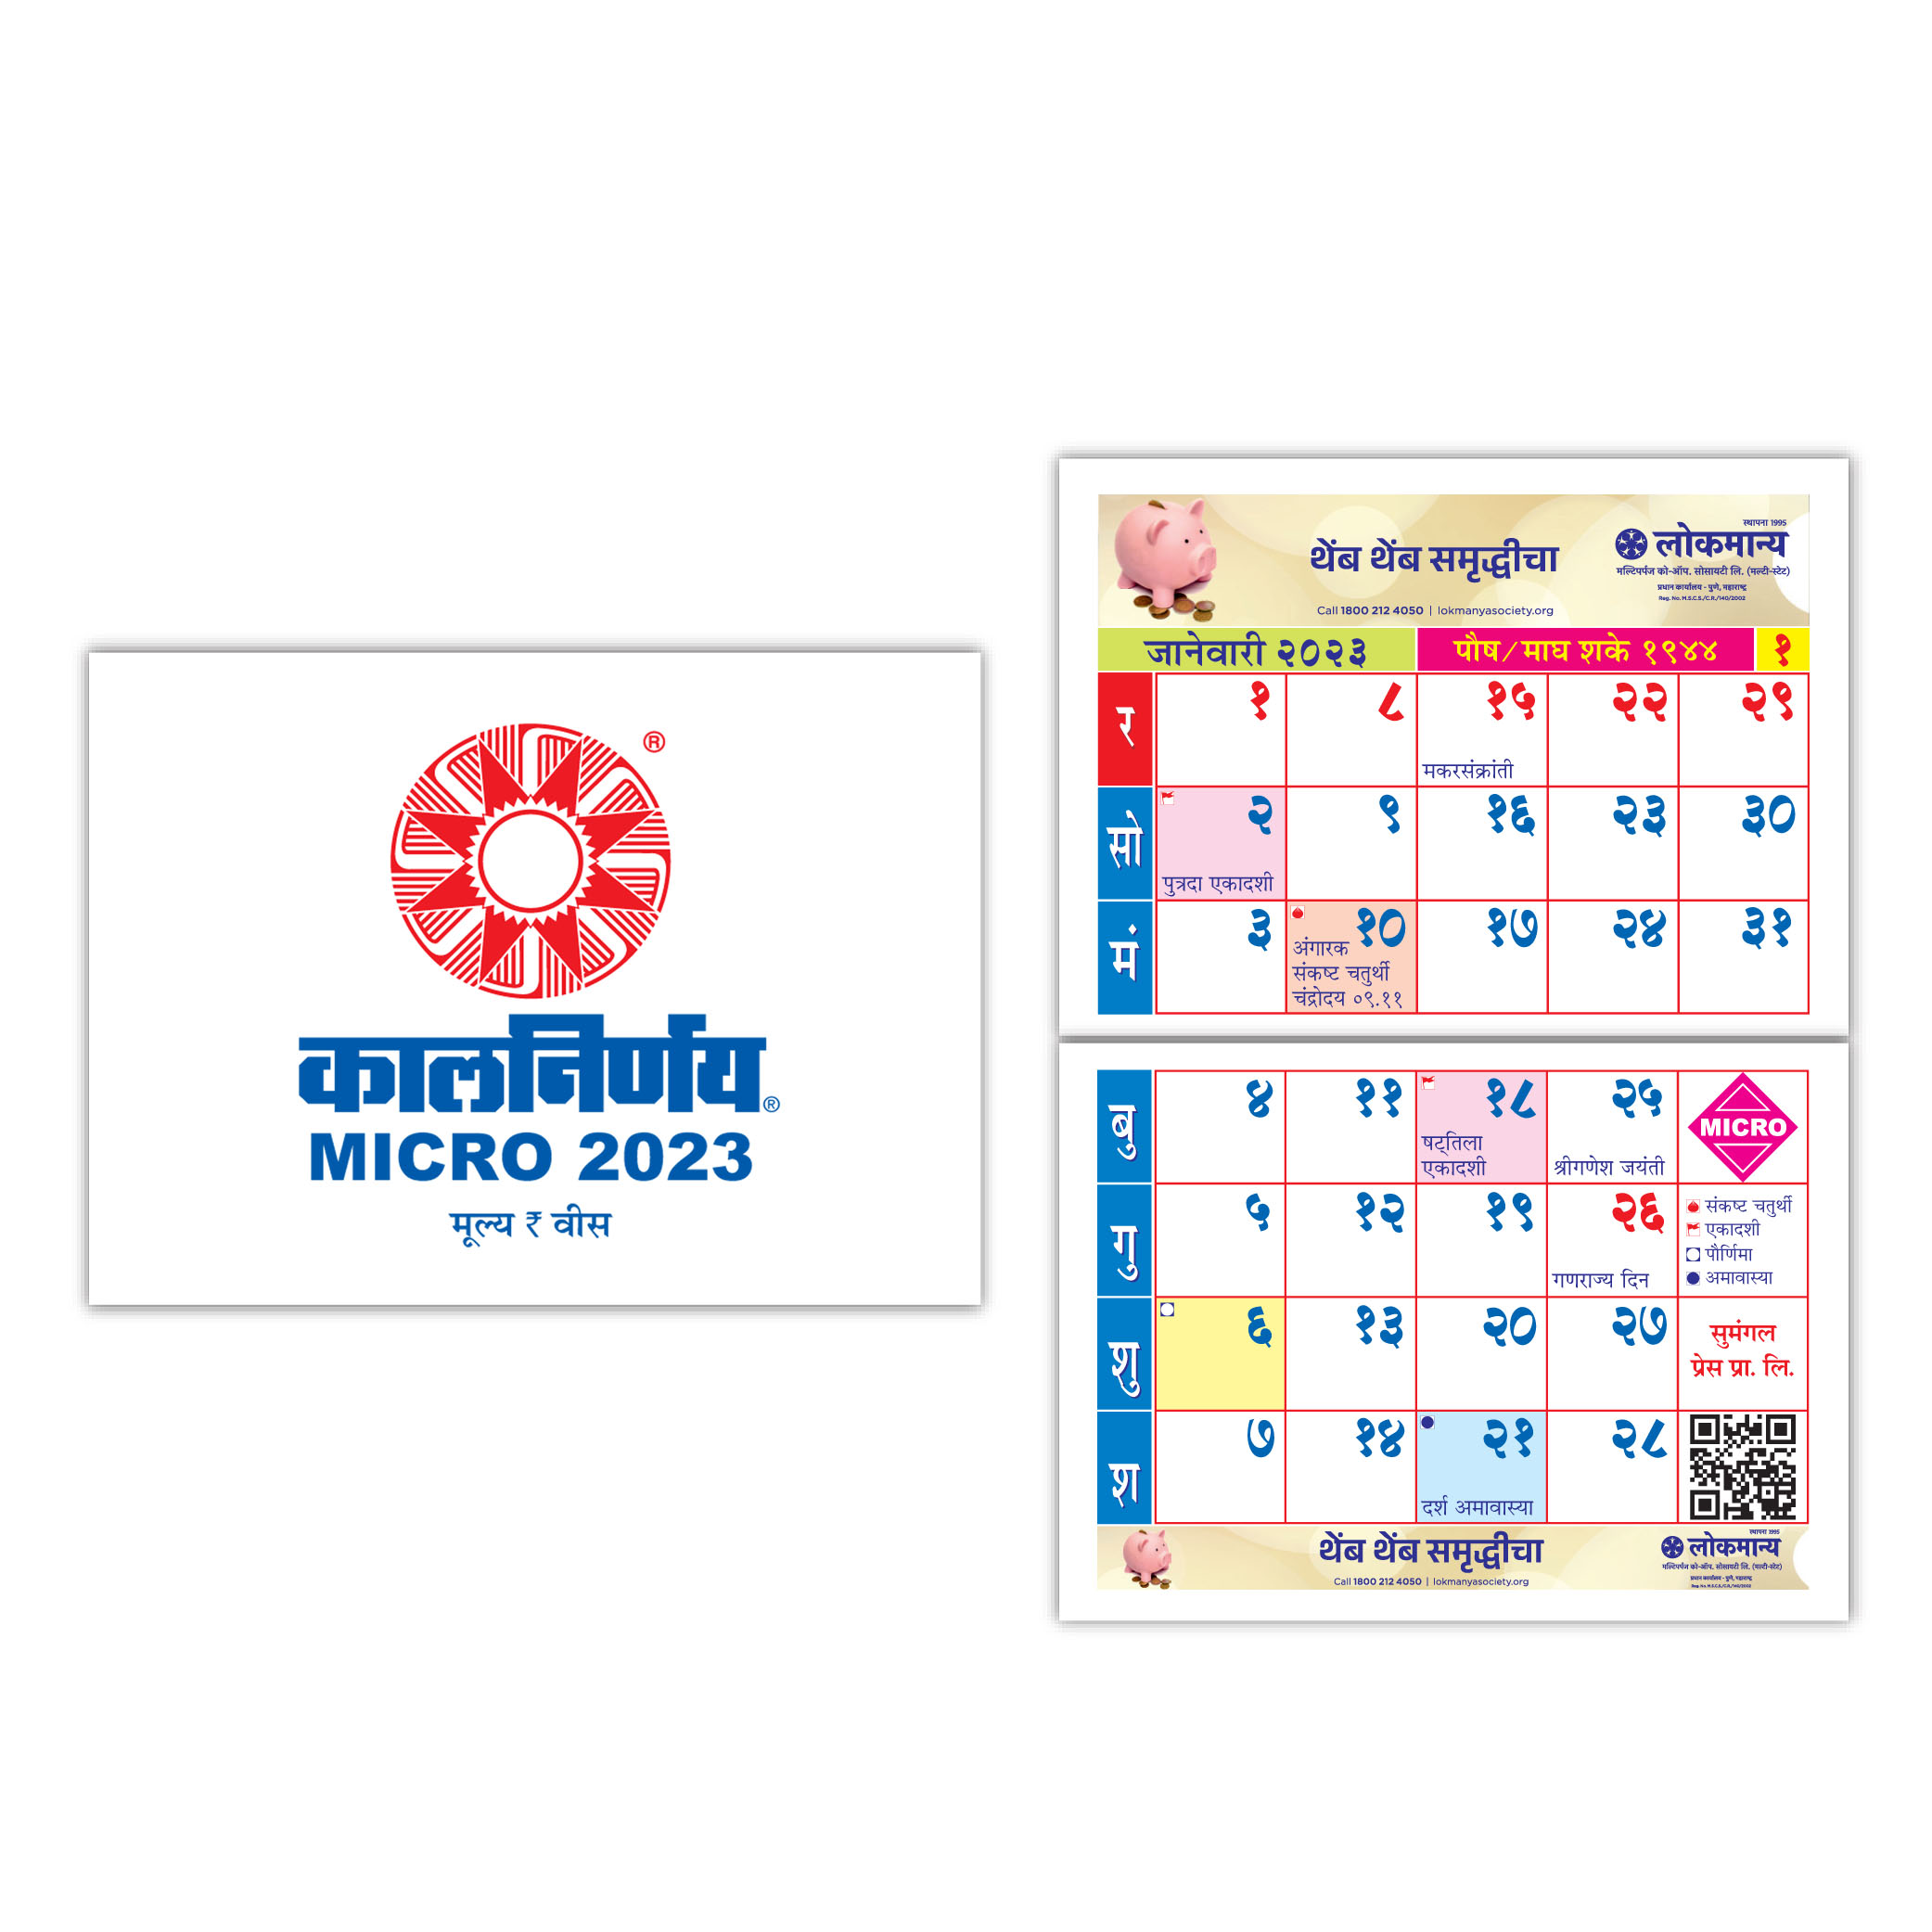 2023 Micro | Micro 2023 | Micro Diary | Diary 2023 | Diary for 2023 | 2023 Diary | 2023 Diary Planner | Pocket Calendar 2023 | 2023 Pocket Calendar